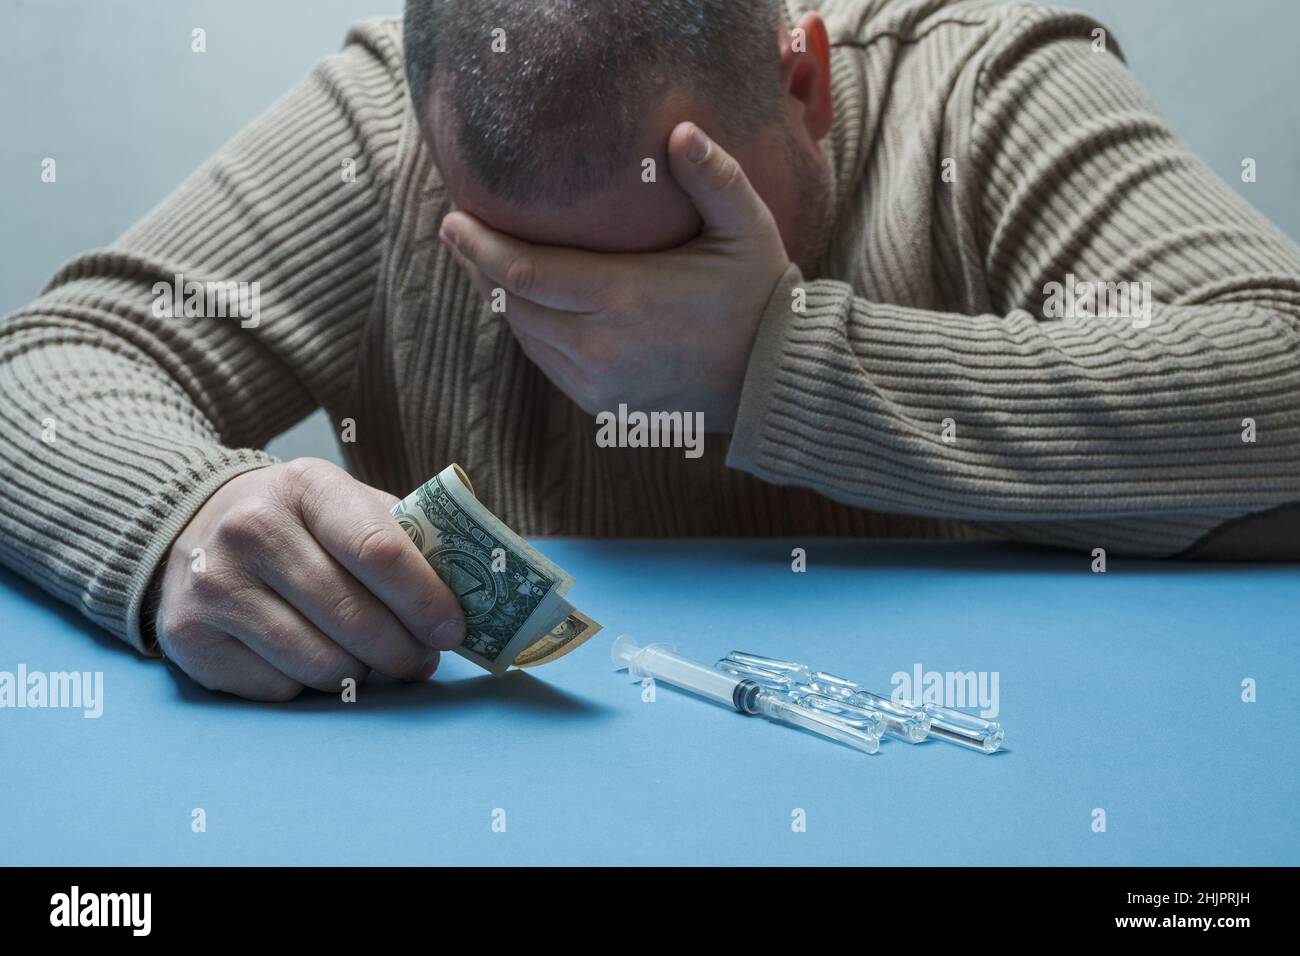 Der Mann versteckt sein Gesicht mit einer Hand, hält Geld in der anderen, medizinische Präparate liegen vor ihm auf dem Tisch. Stockfoto